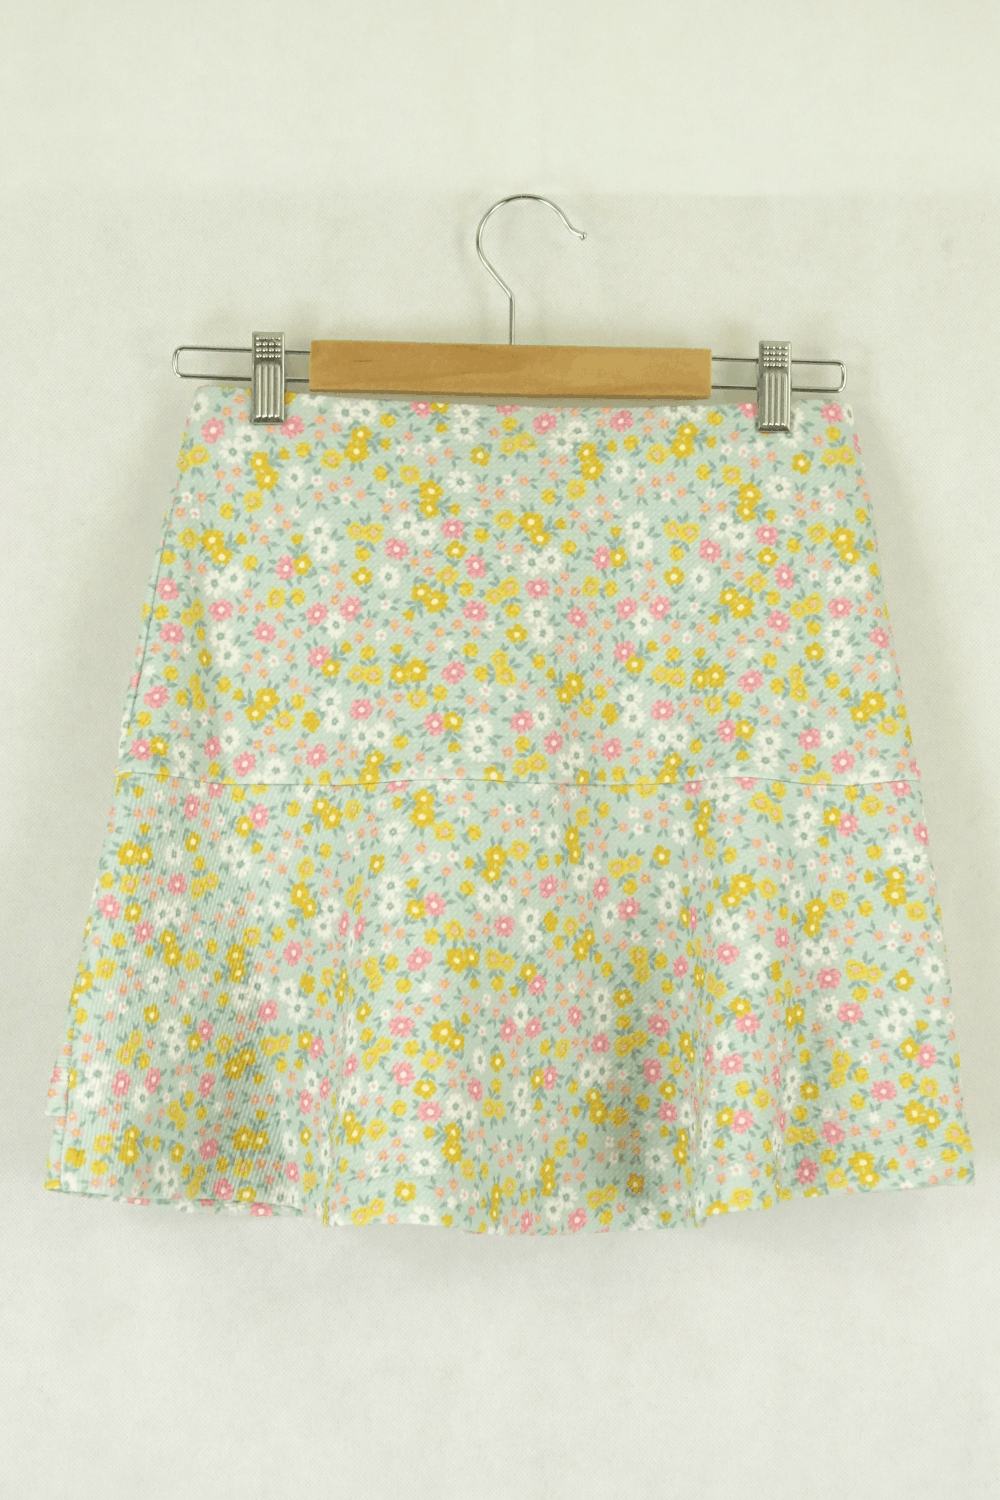 Sportsgirl Size Xs Floral Skirt